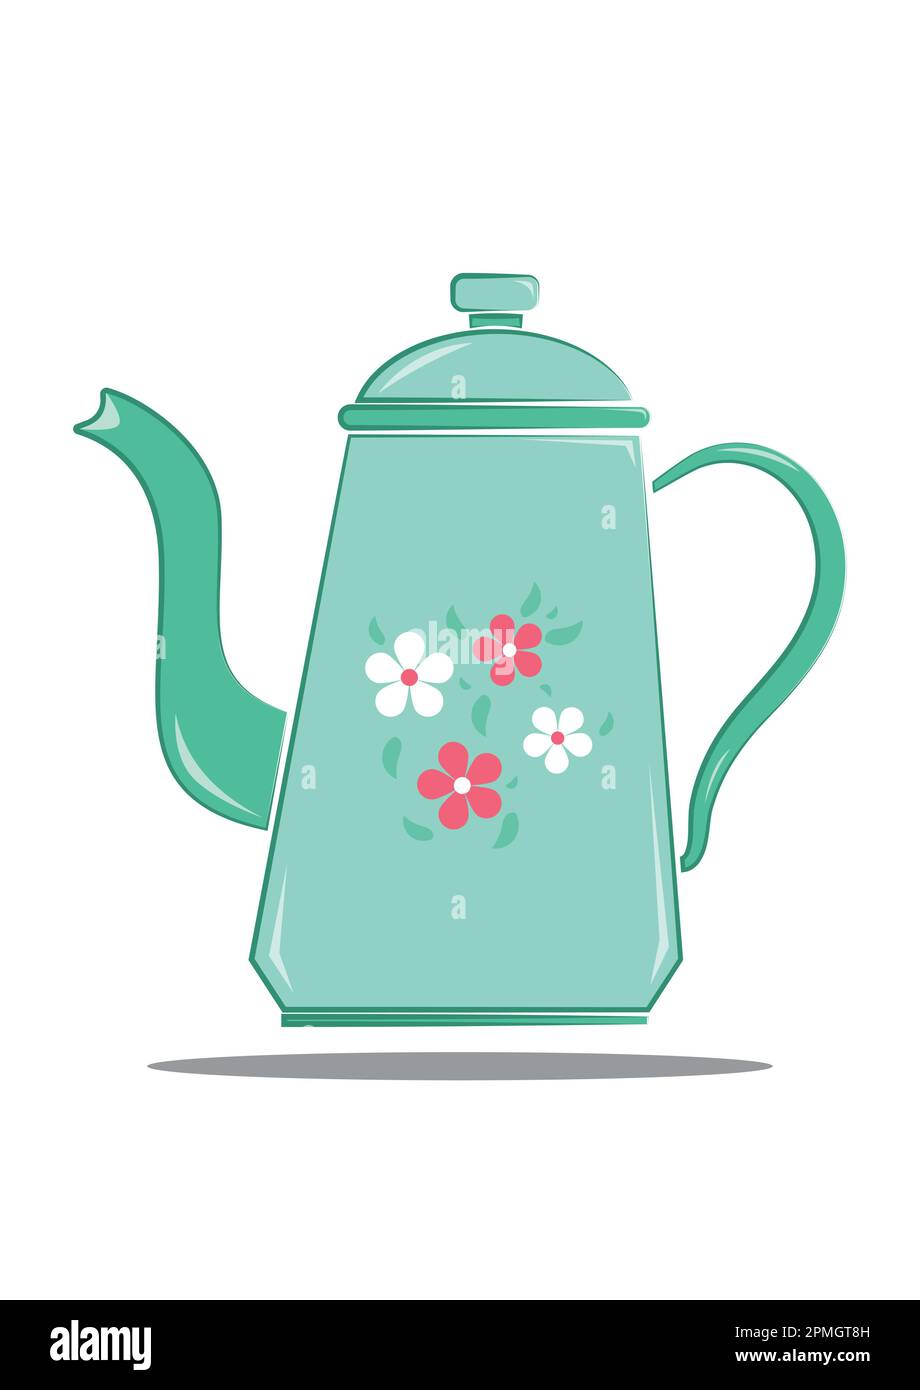 Illustration vectorielle d'une bouilloire d'époque avec motif fleuri de style plat, isolée sur fond blanc Illustration de Vecteur